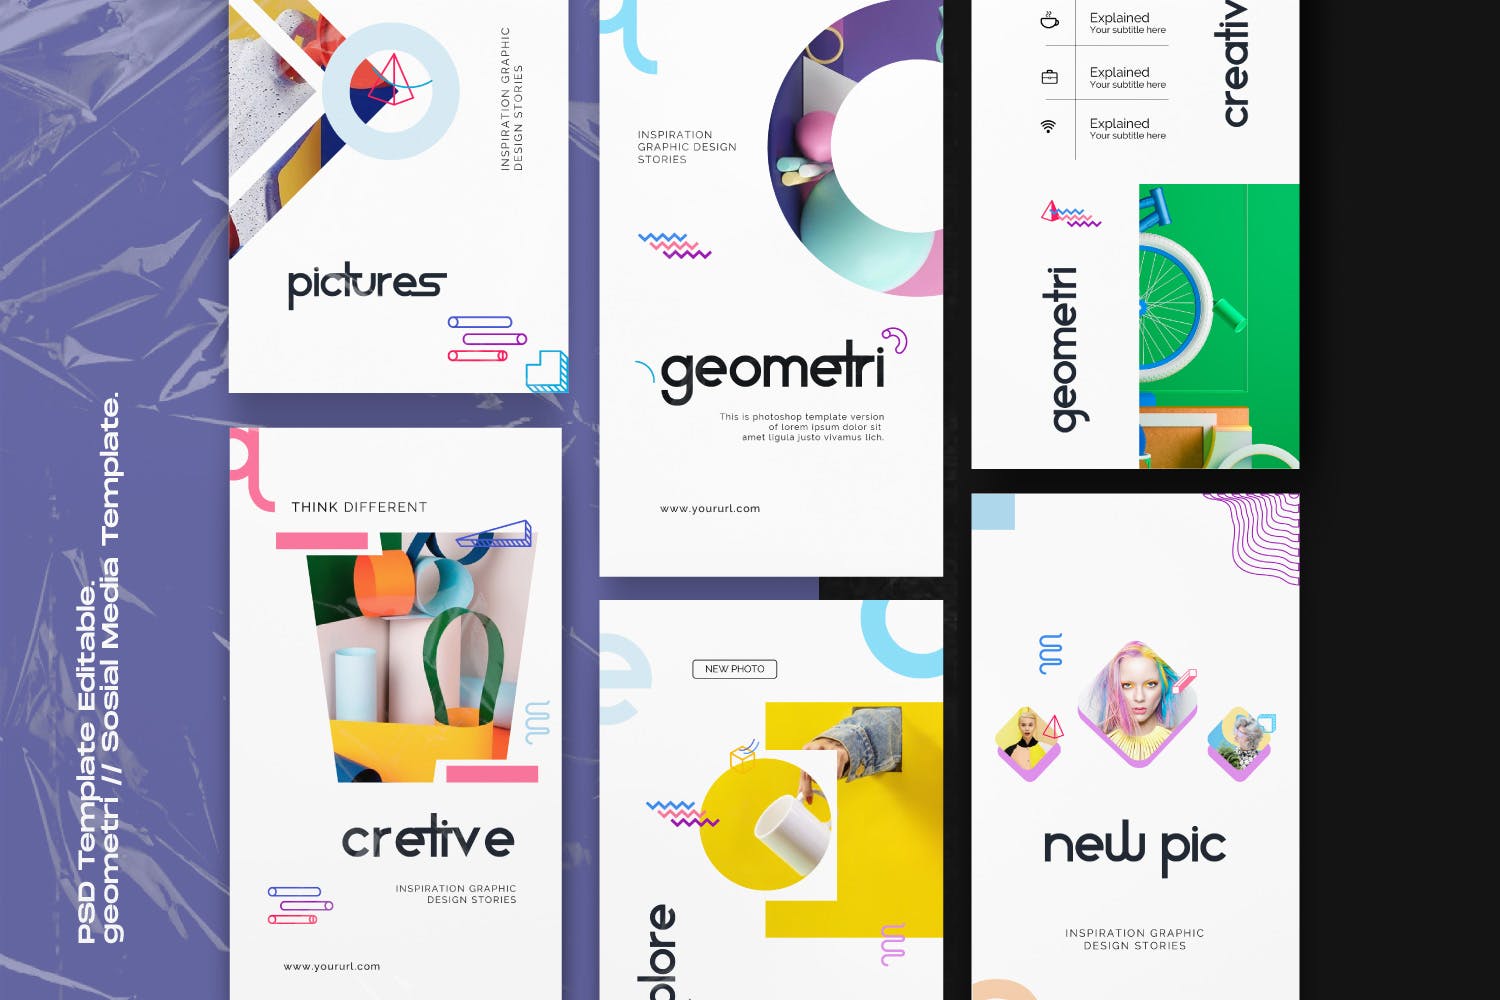 创意几何图形设计风格社交媒体素材包v1 Geometri – Pack 1 Social Media Kit Post+Stories插图(1)